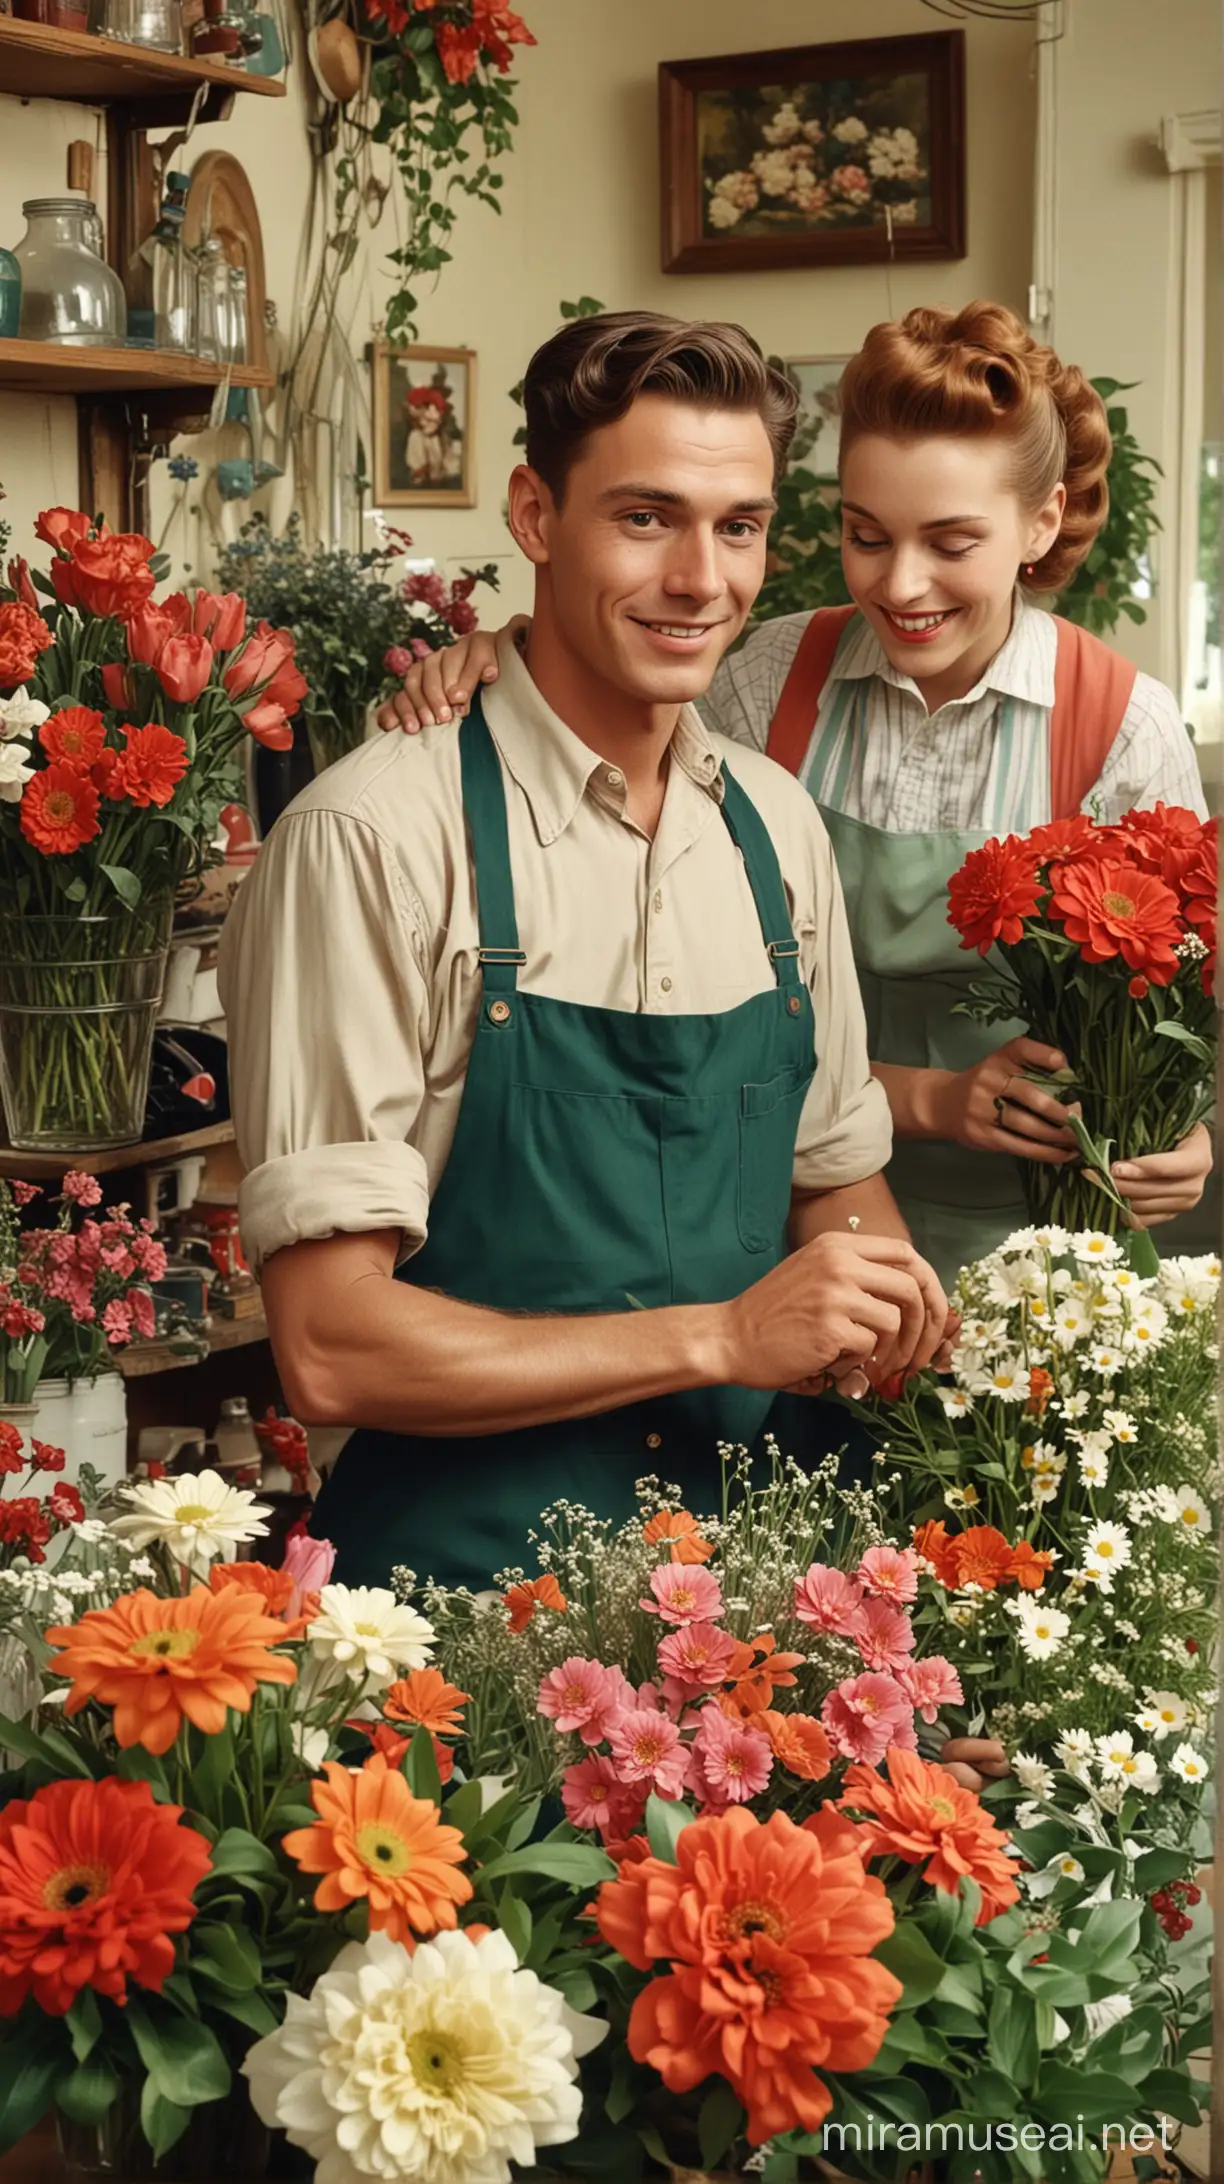 1950s Florist Shop Happiness